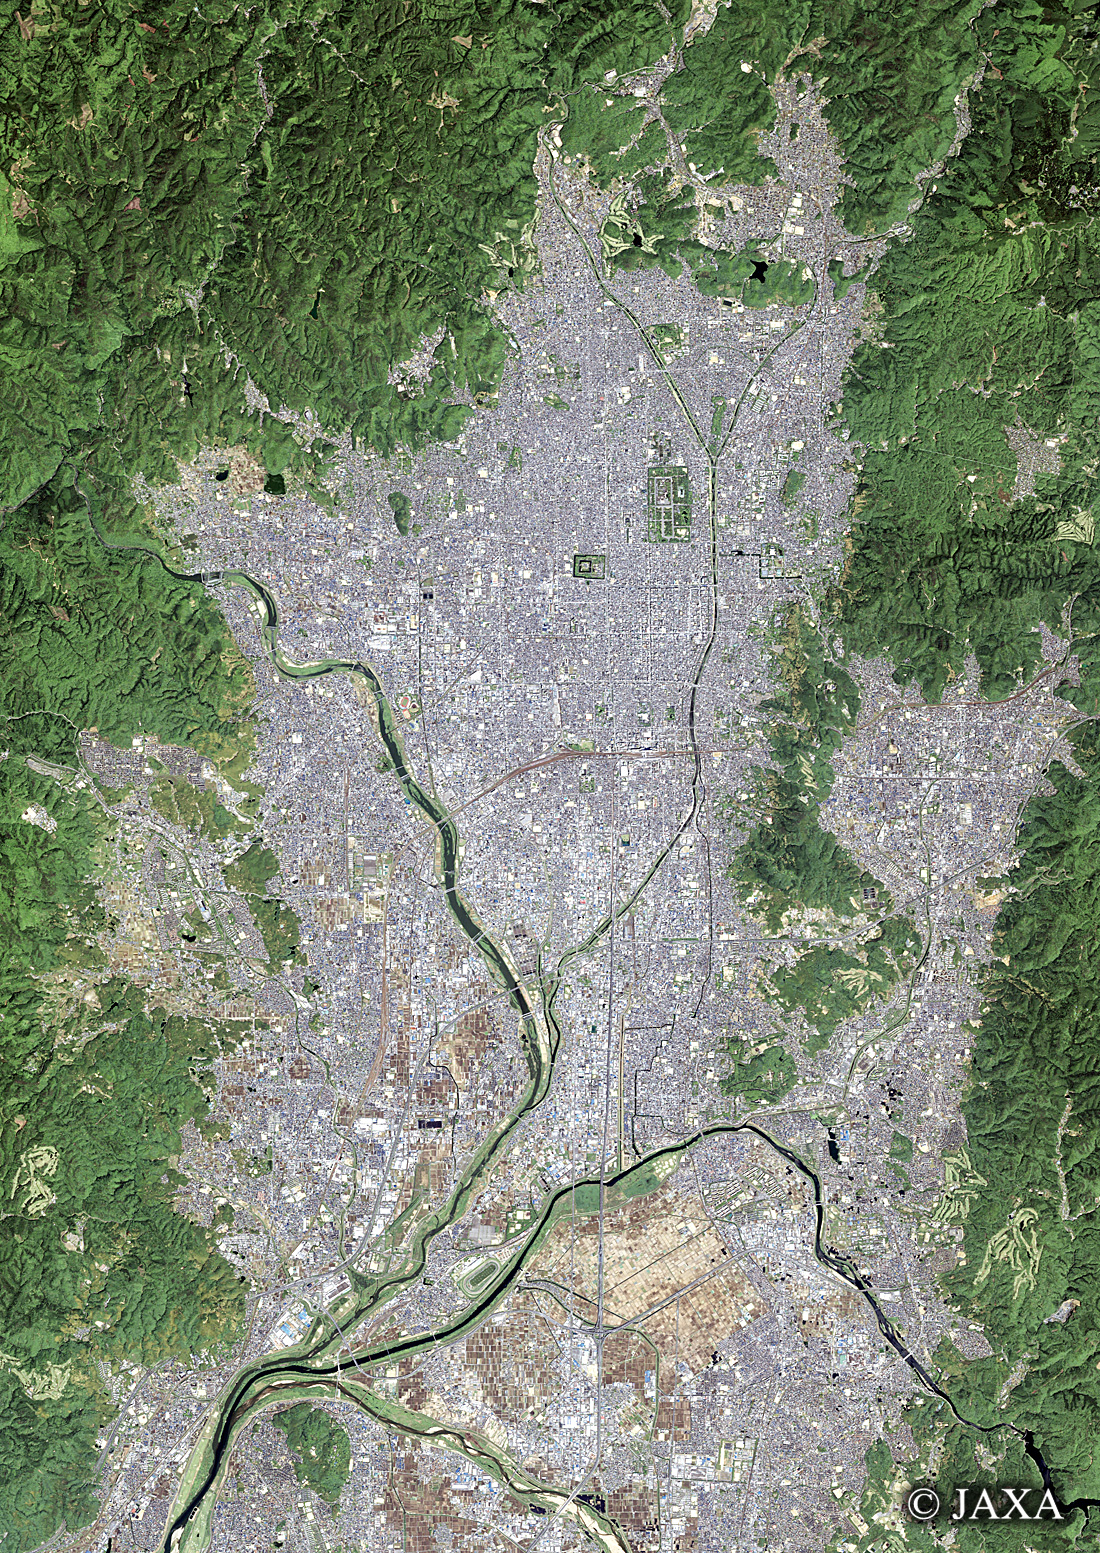 だいちから見た日本の都市 京都:衛星画像